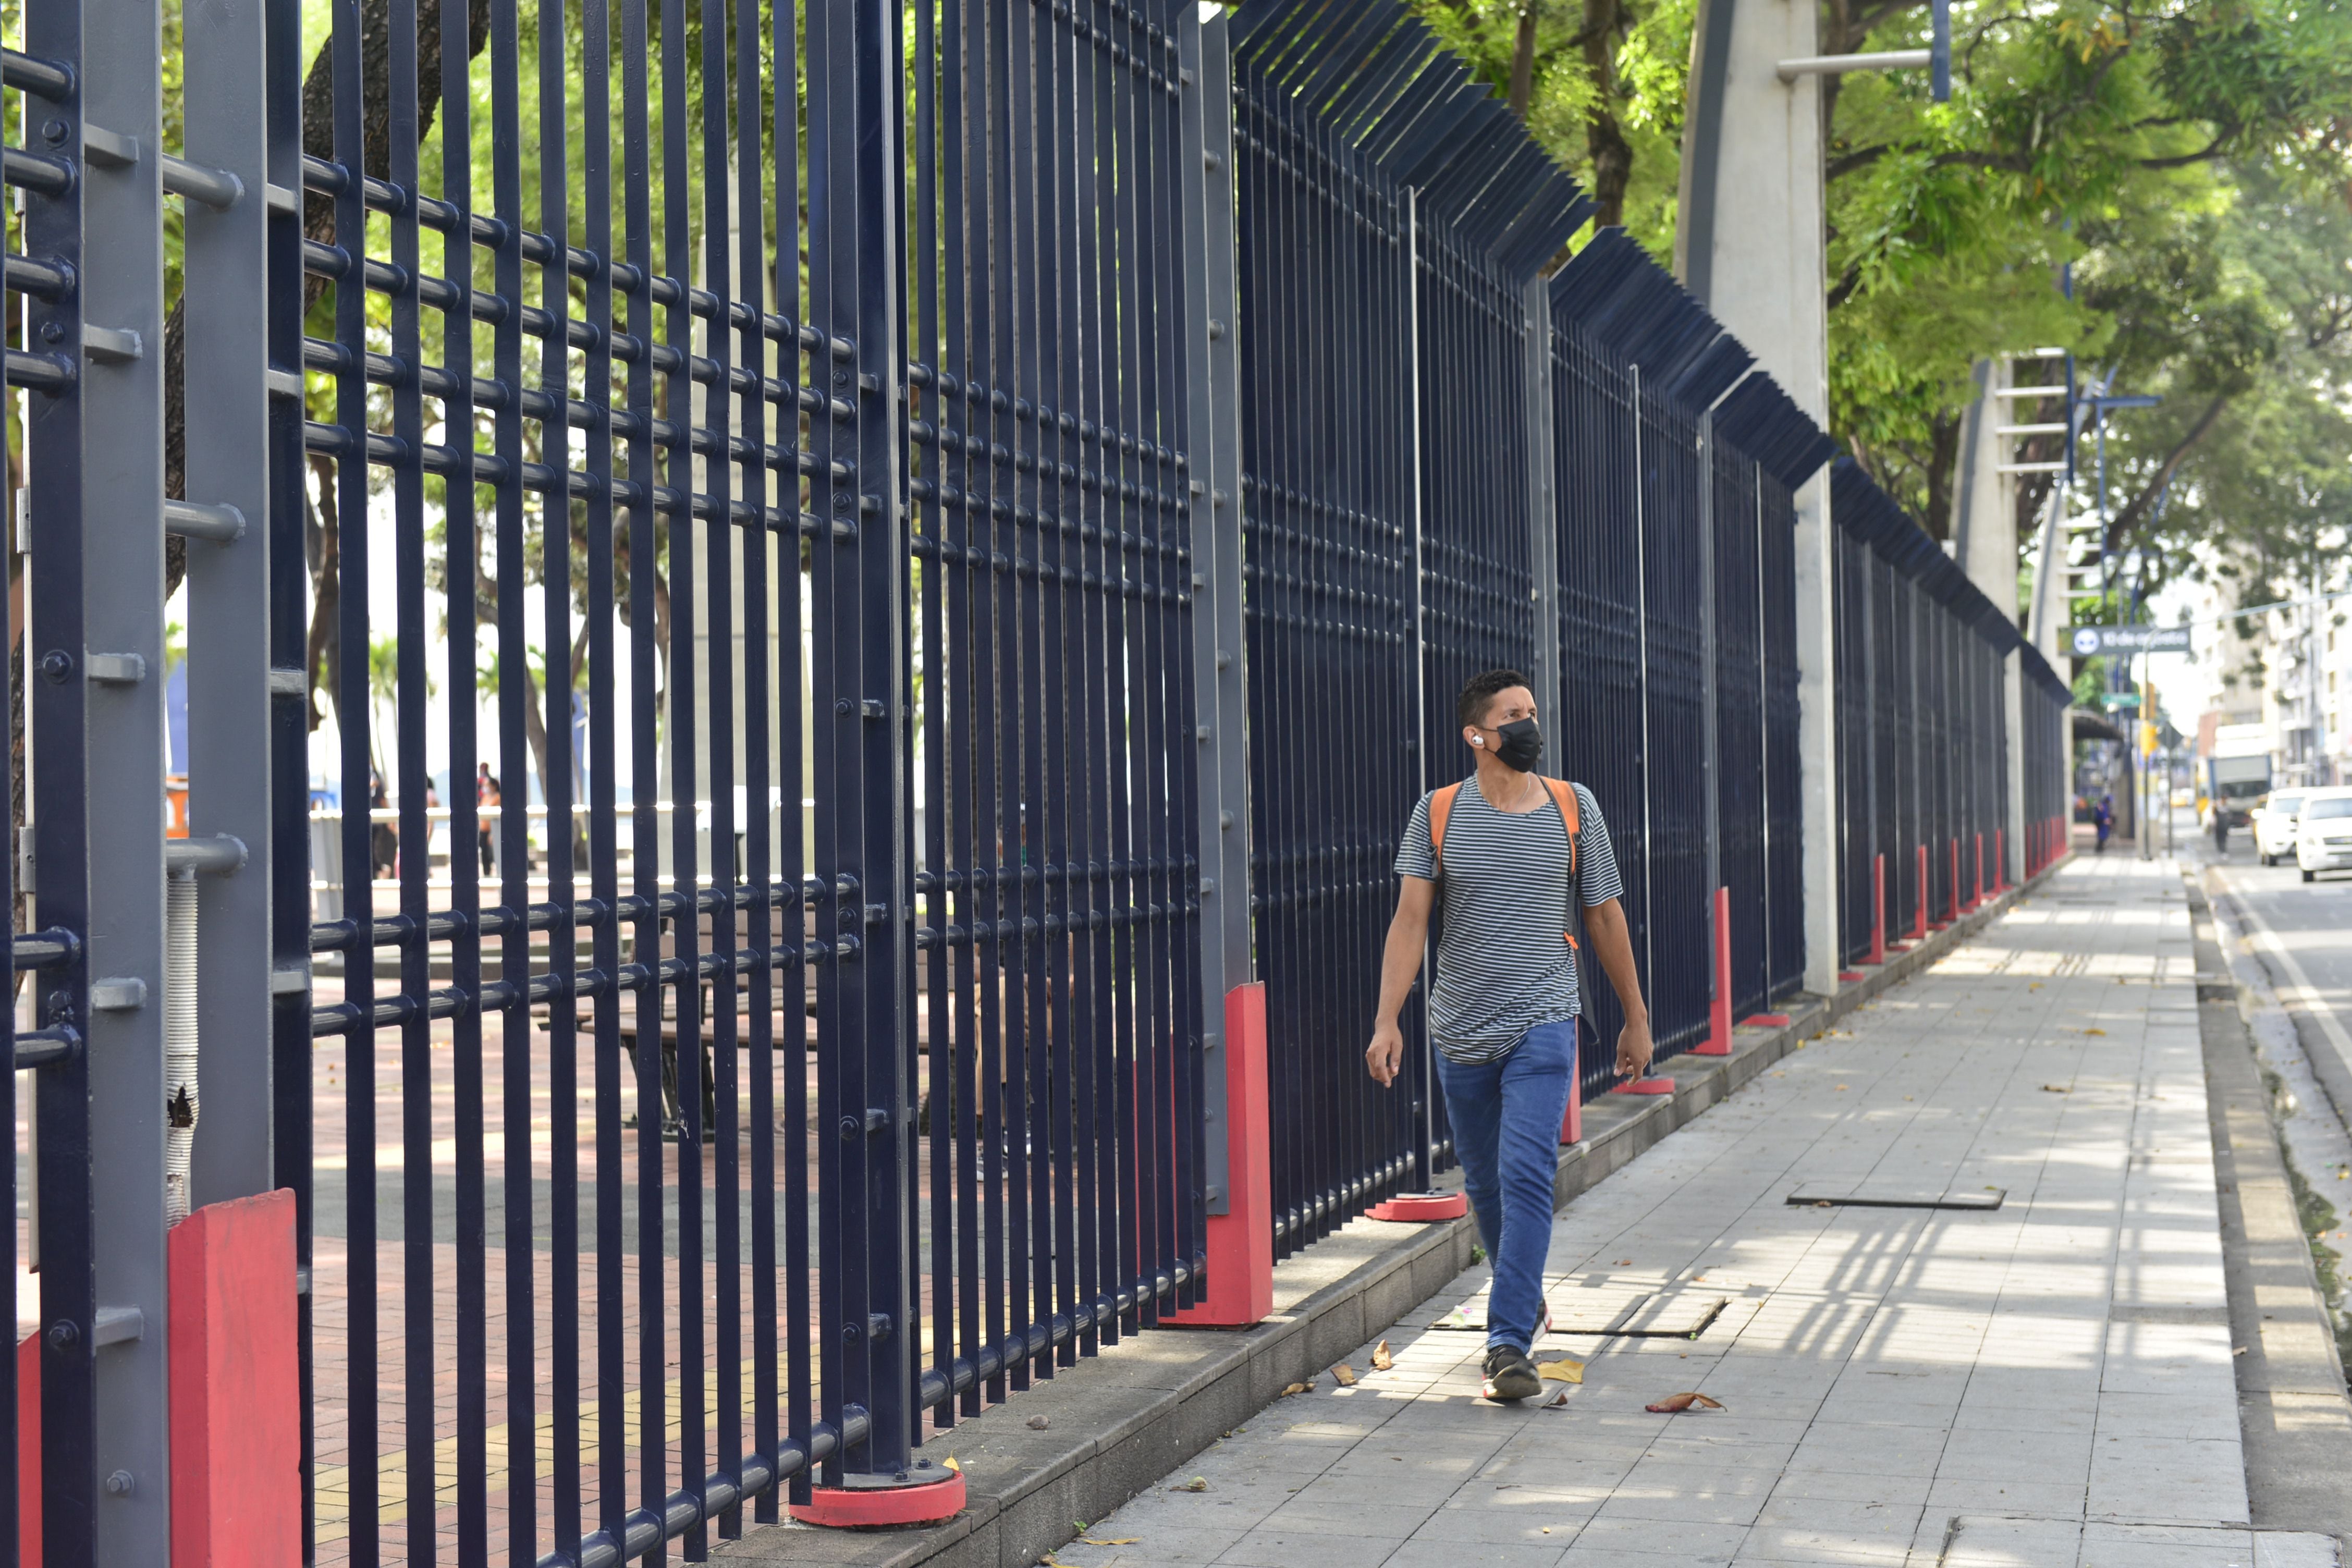 El retiro de las rejas de 2,5 km del Malecón, una propuesta del alcalde electo de Guayaquil que tiene apoyo y reparos entre usuarios